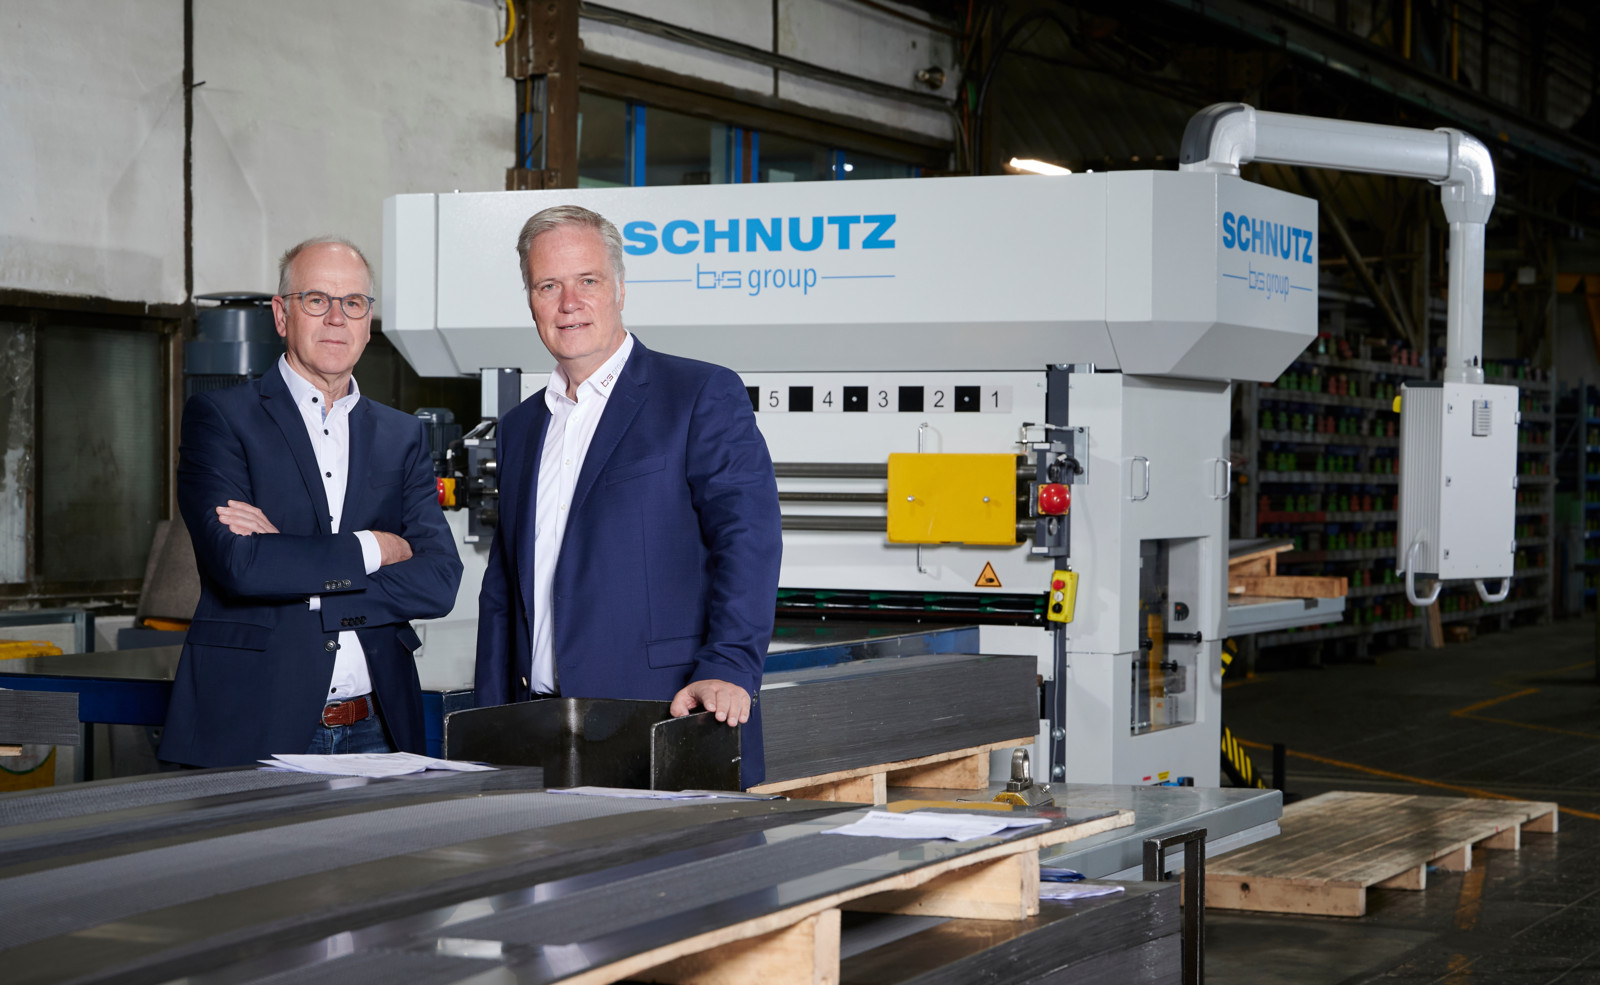 „Wir bauen Hochleistungsrichtmaschinen, die speziell für das Richten von Lochblechen optimiert sind“, so Dr.-Ing. Lutz-Stefan Henrich, Geschäftsführer der Schnutz GmbH (rechts); im Bild mit Christoph Quast, Lochanstalt Aherhammer GmbH (links).